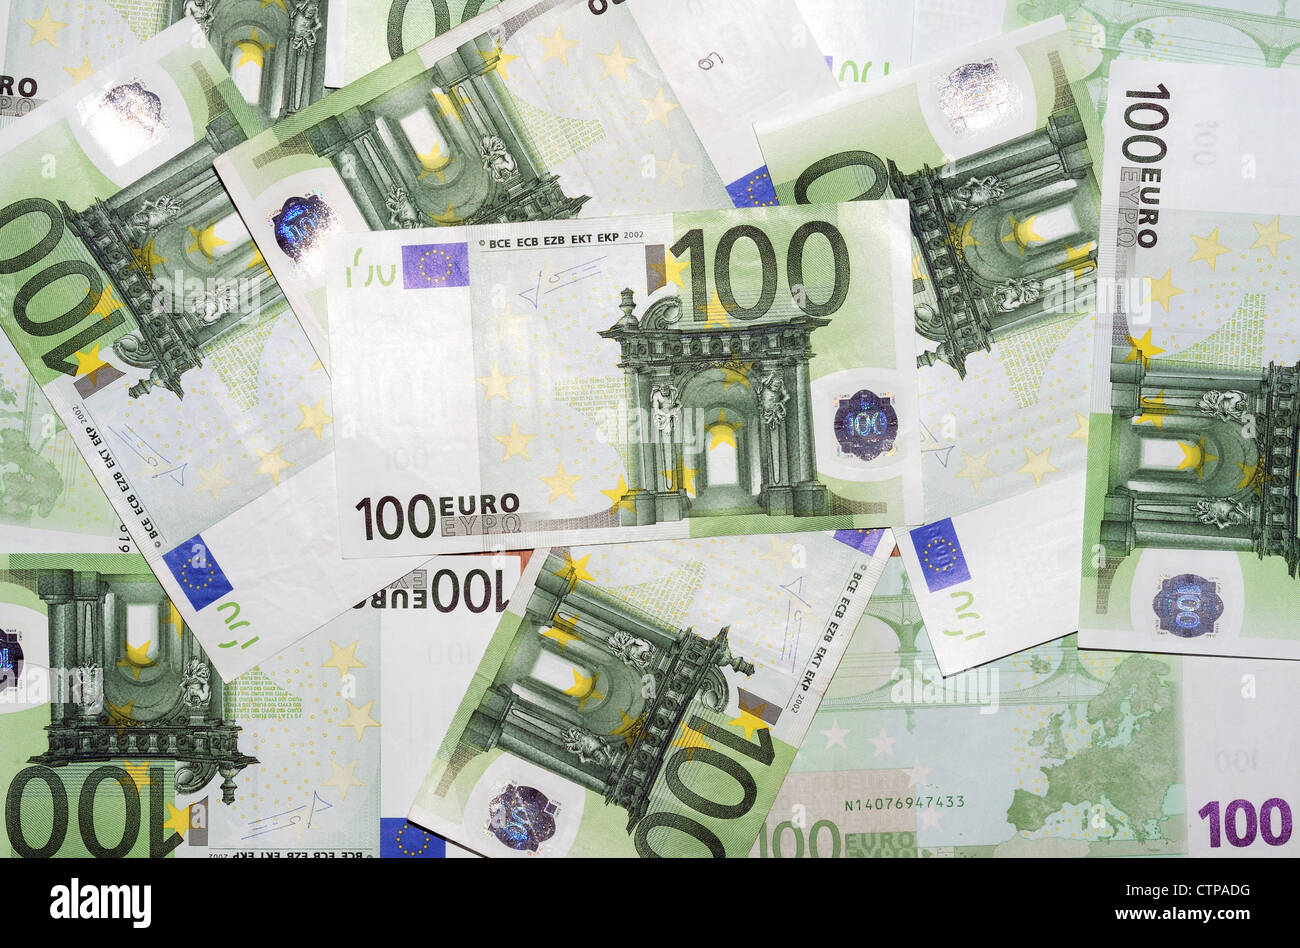 notes 100 Euro Stock Photo